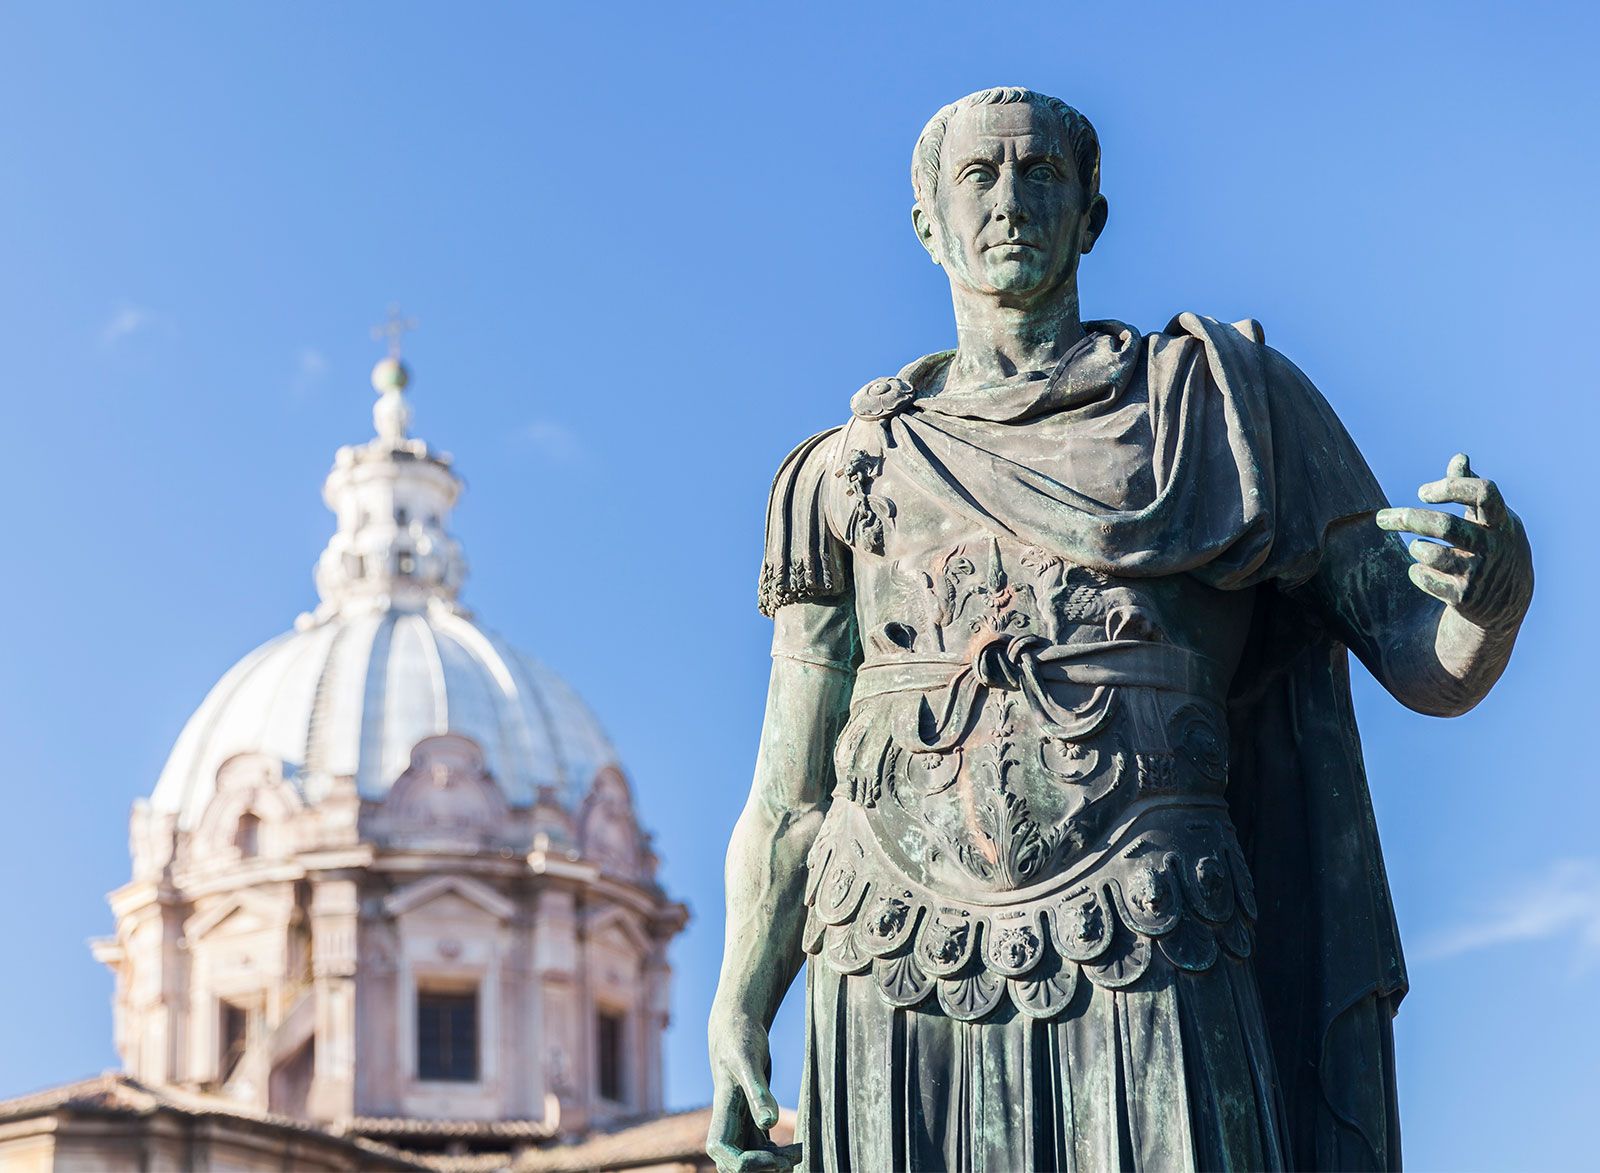 Julius-Caesar-statue-Rome-Italy.jpg